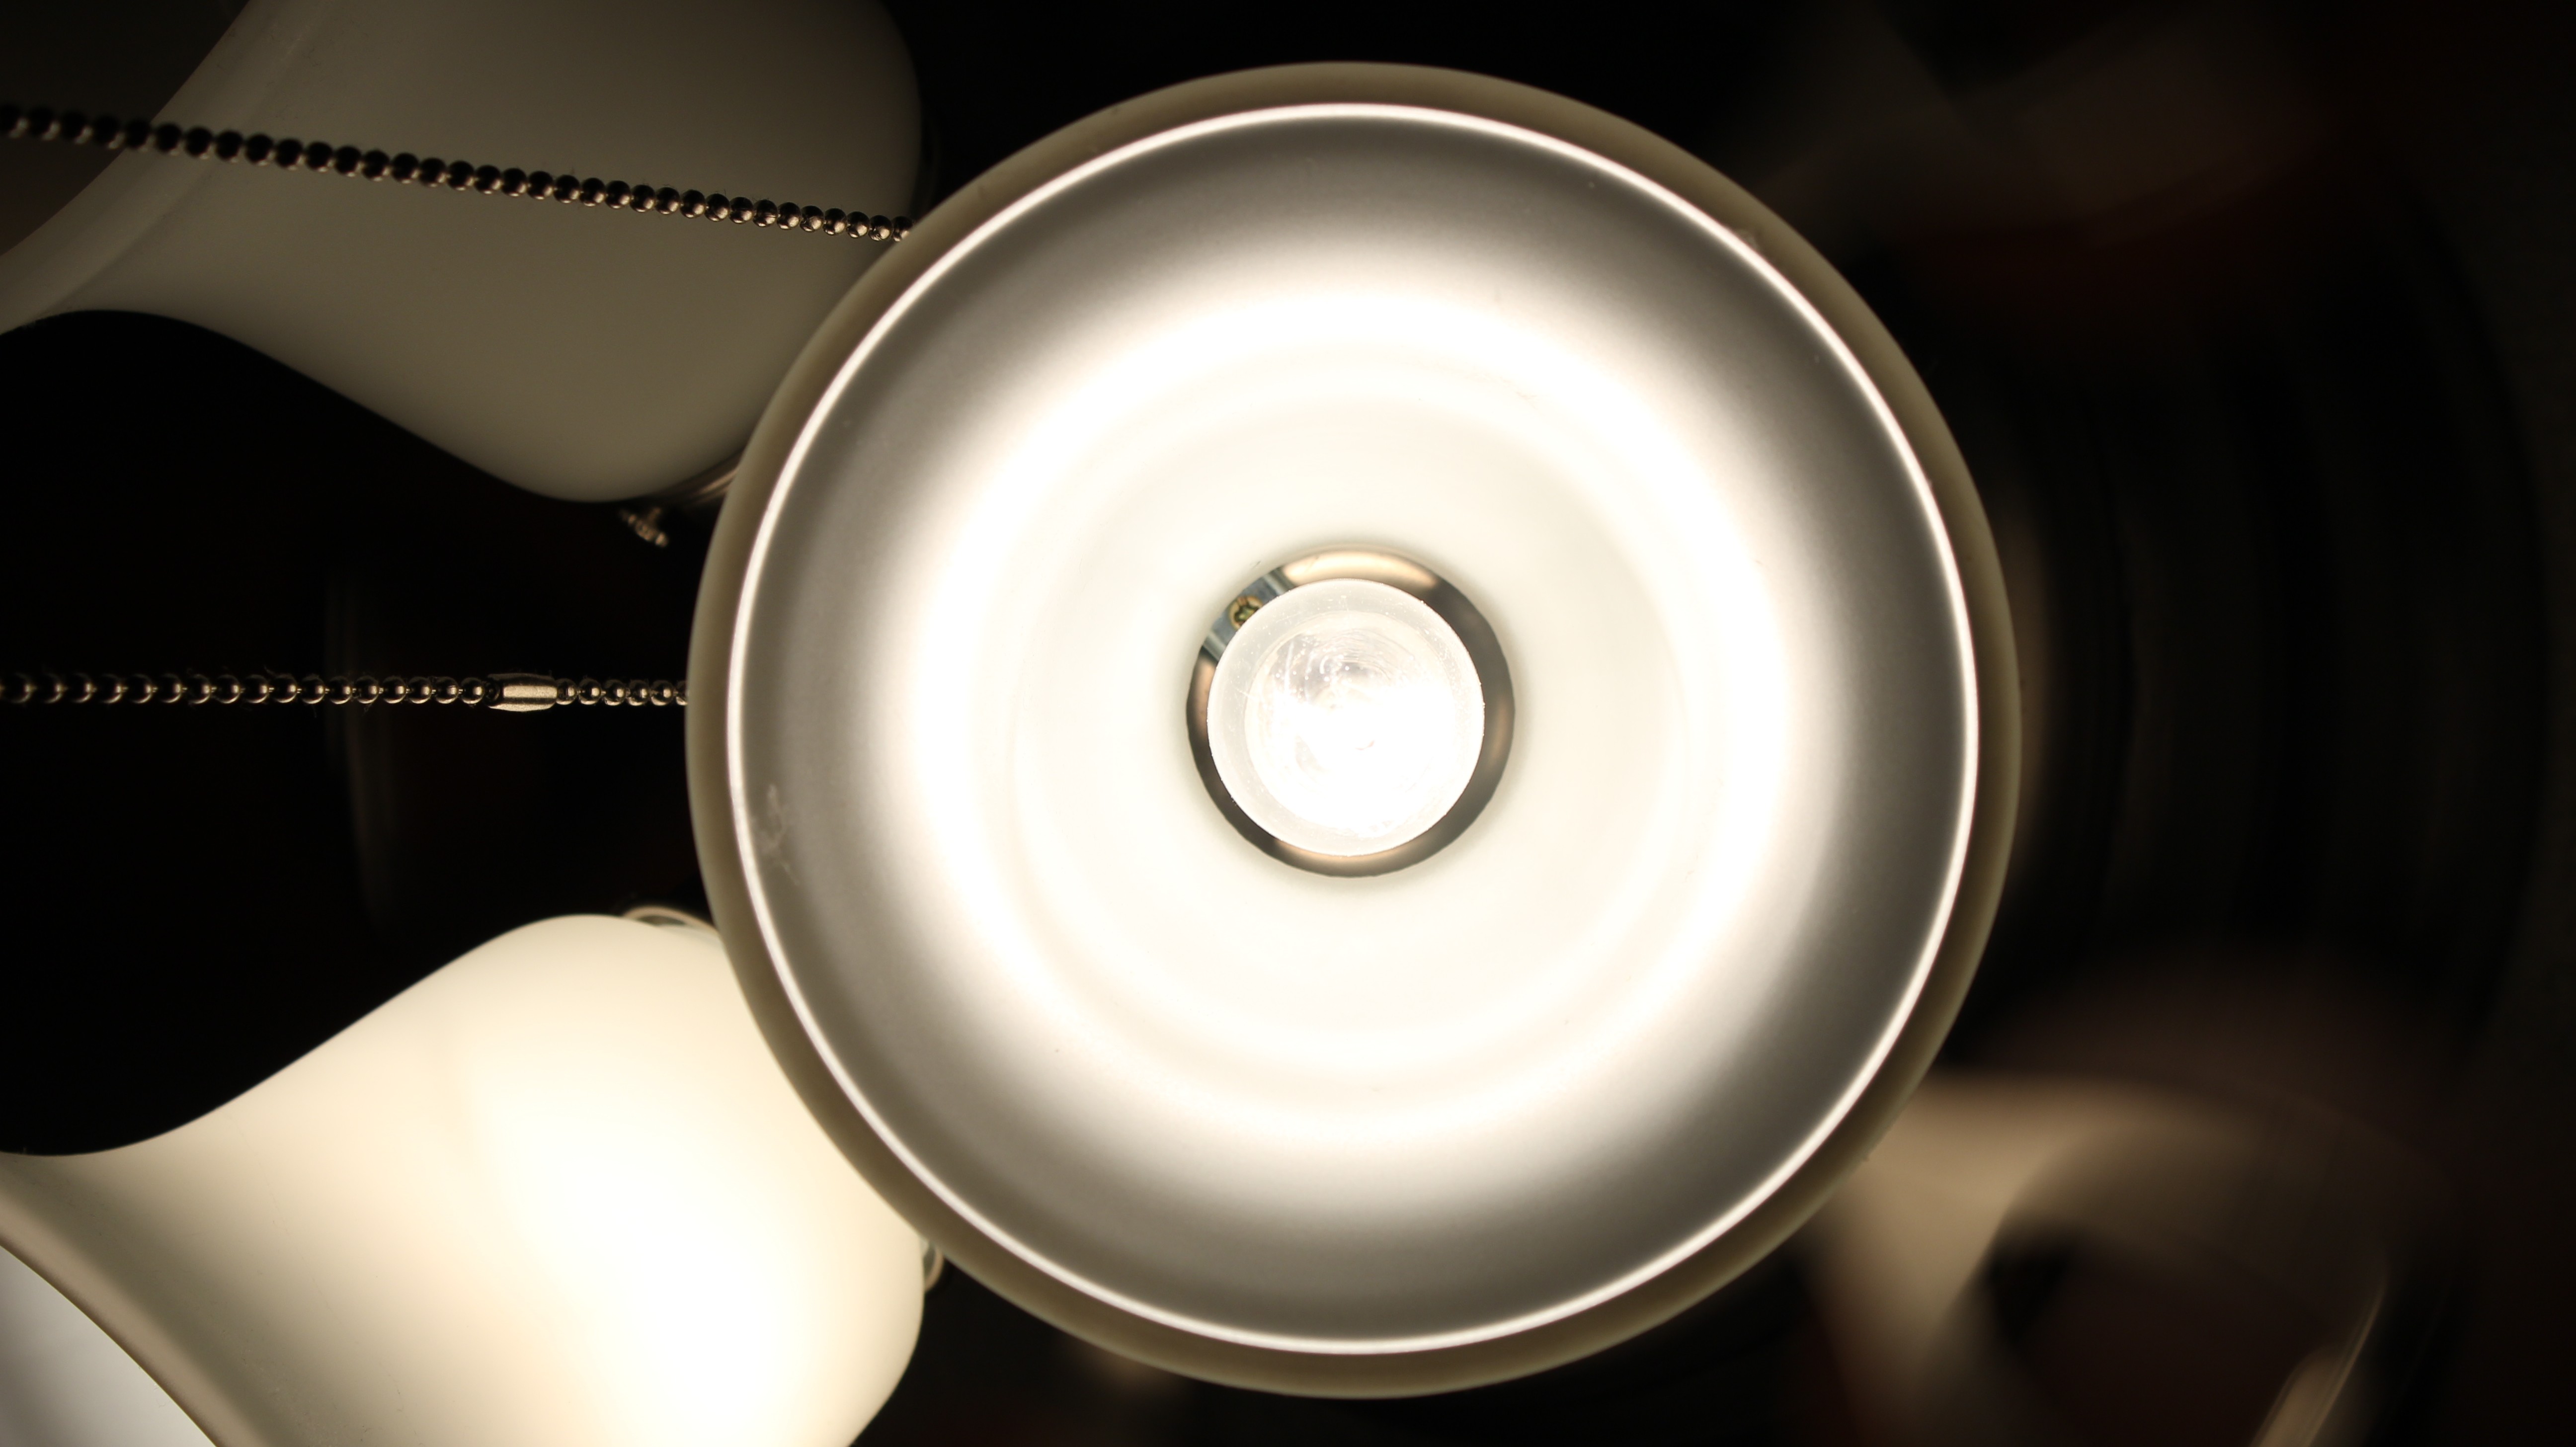 General 5184x2912 light bulb lamp lights beige technology indoors closeup